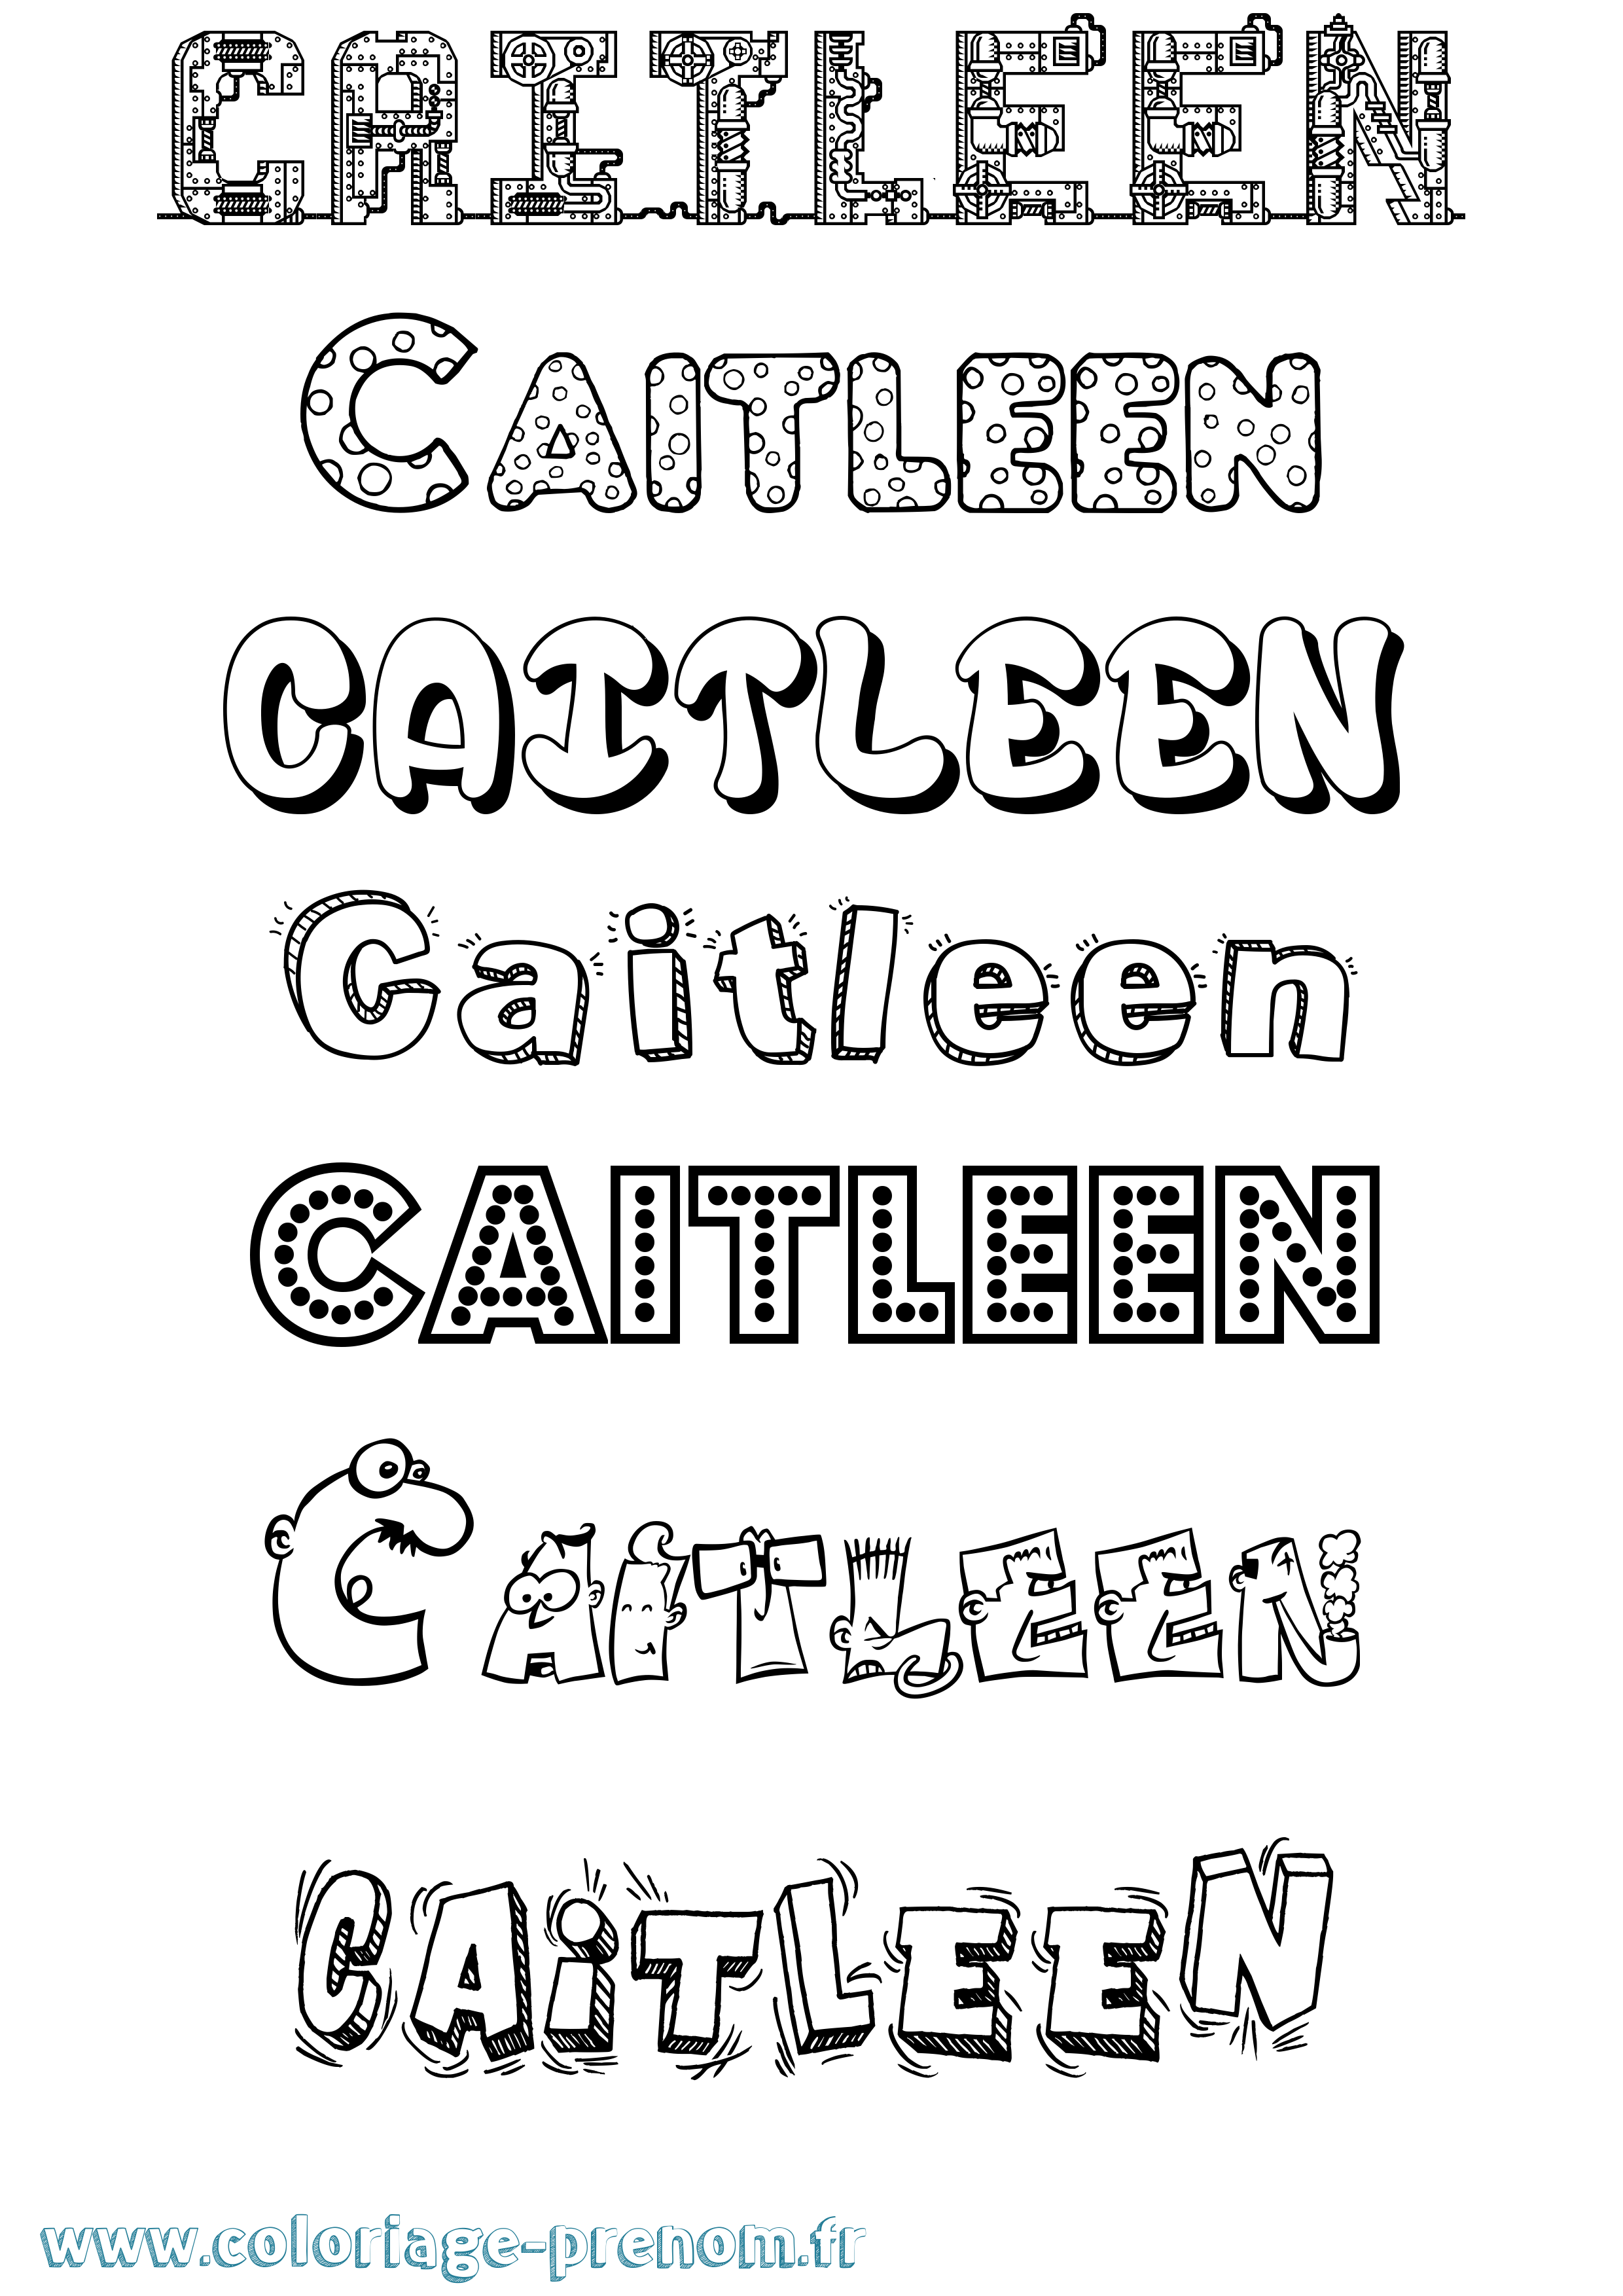 Coloriage prénom Caitleen Fun